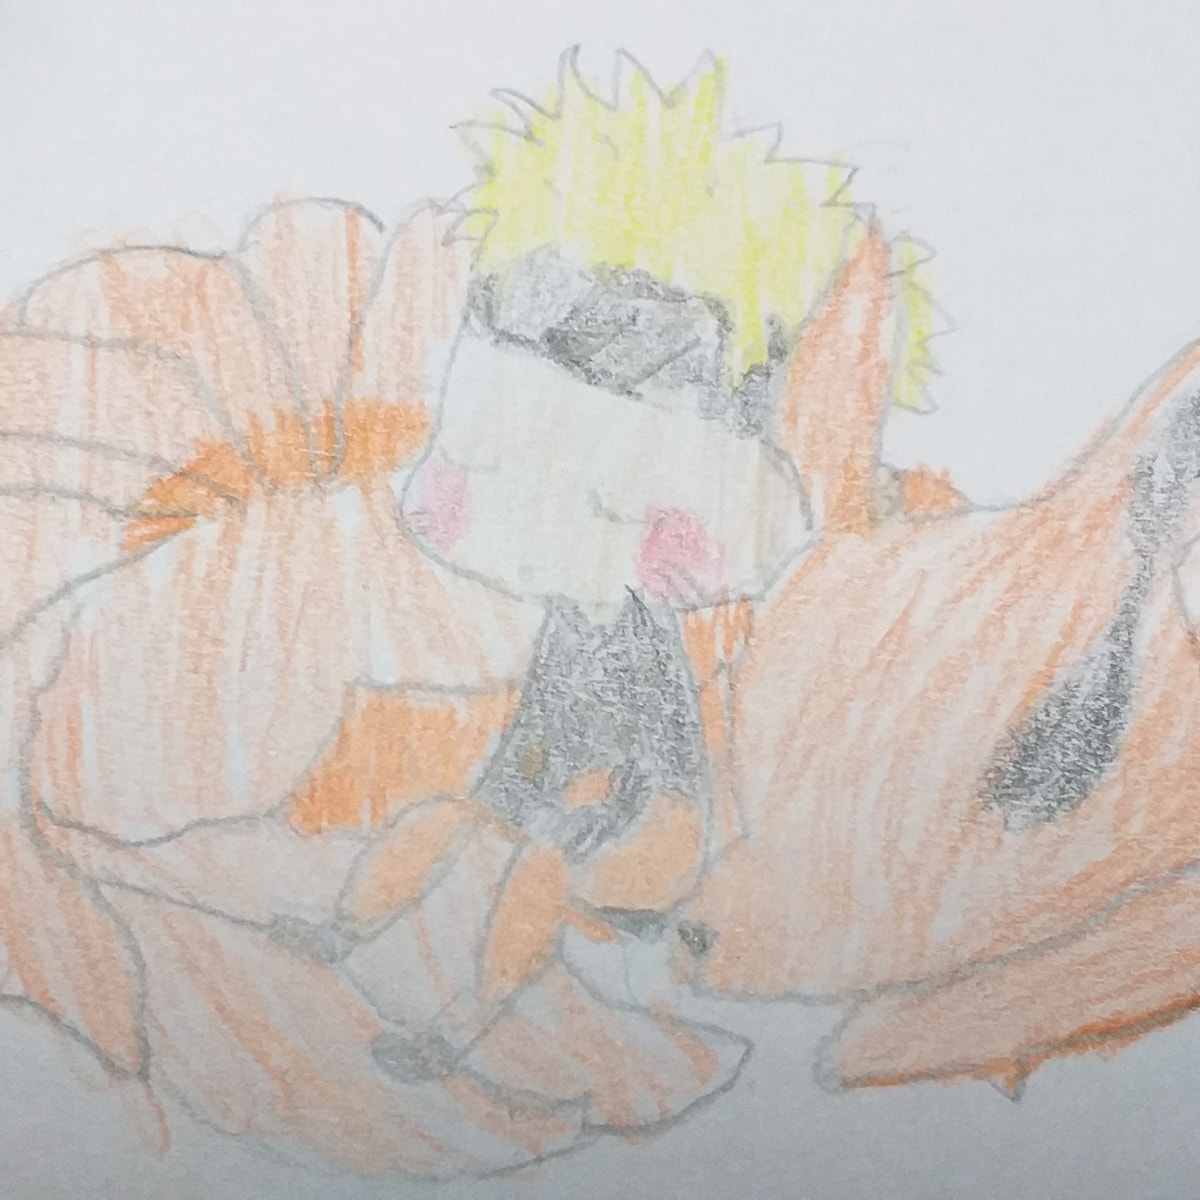 → Como Desenhar o Naruto [2023]